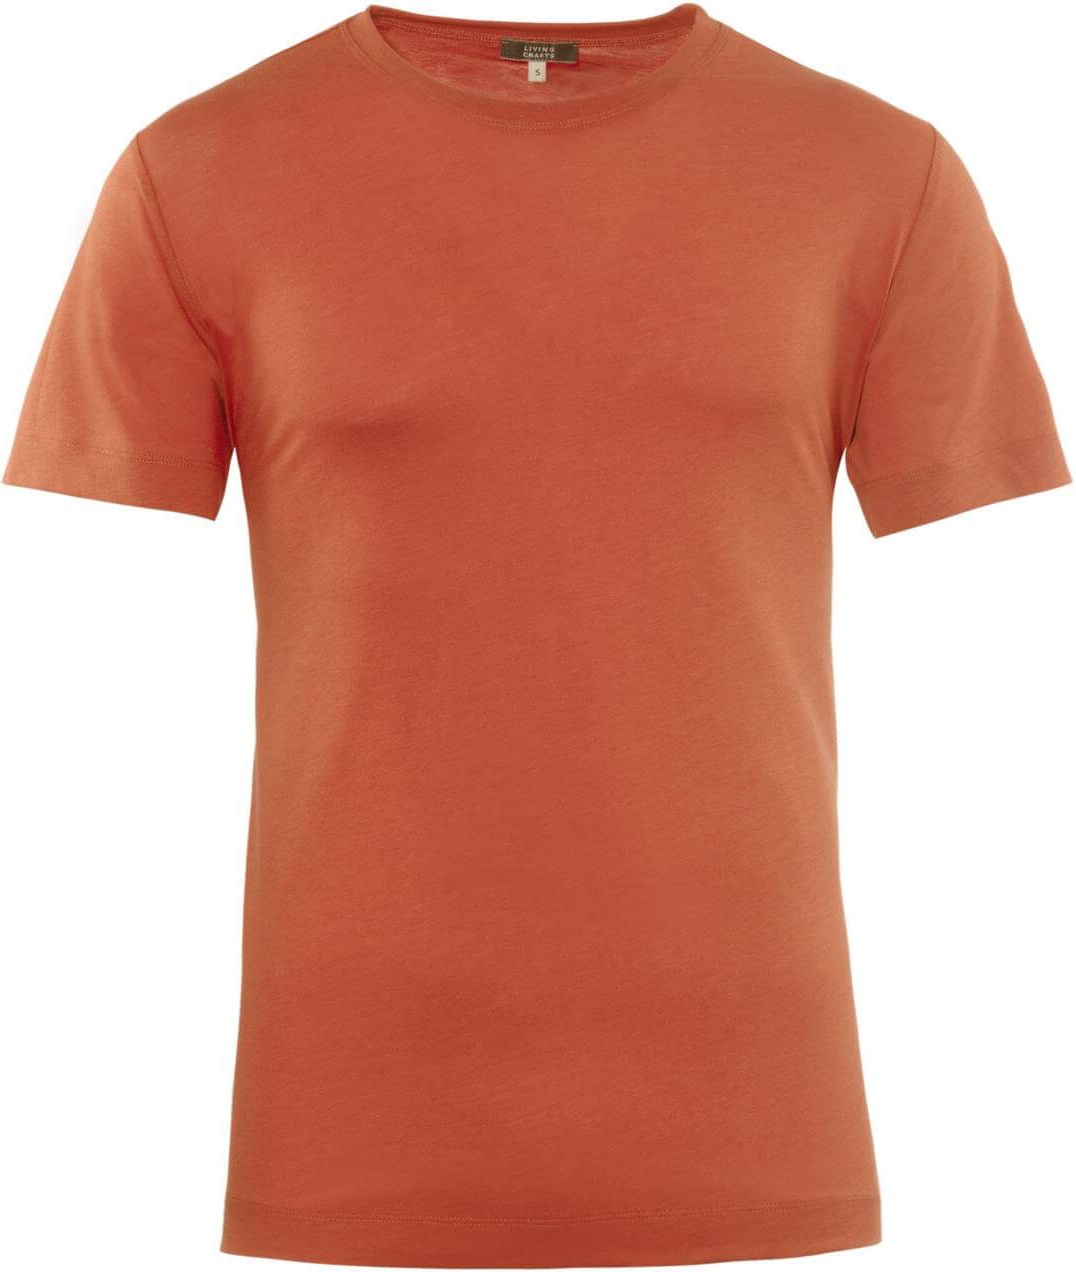 Weiches Basic T-Shirt KORNEL burnt orange